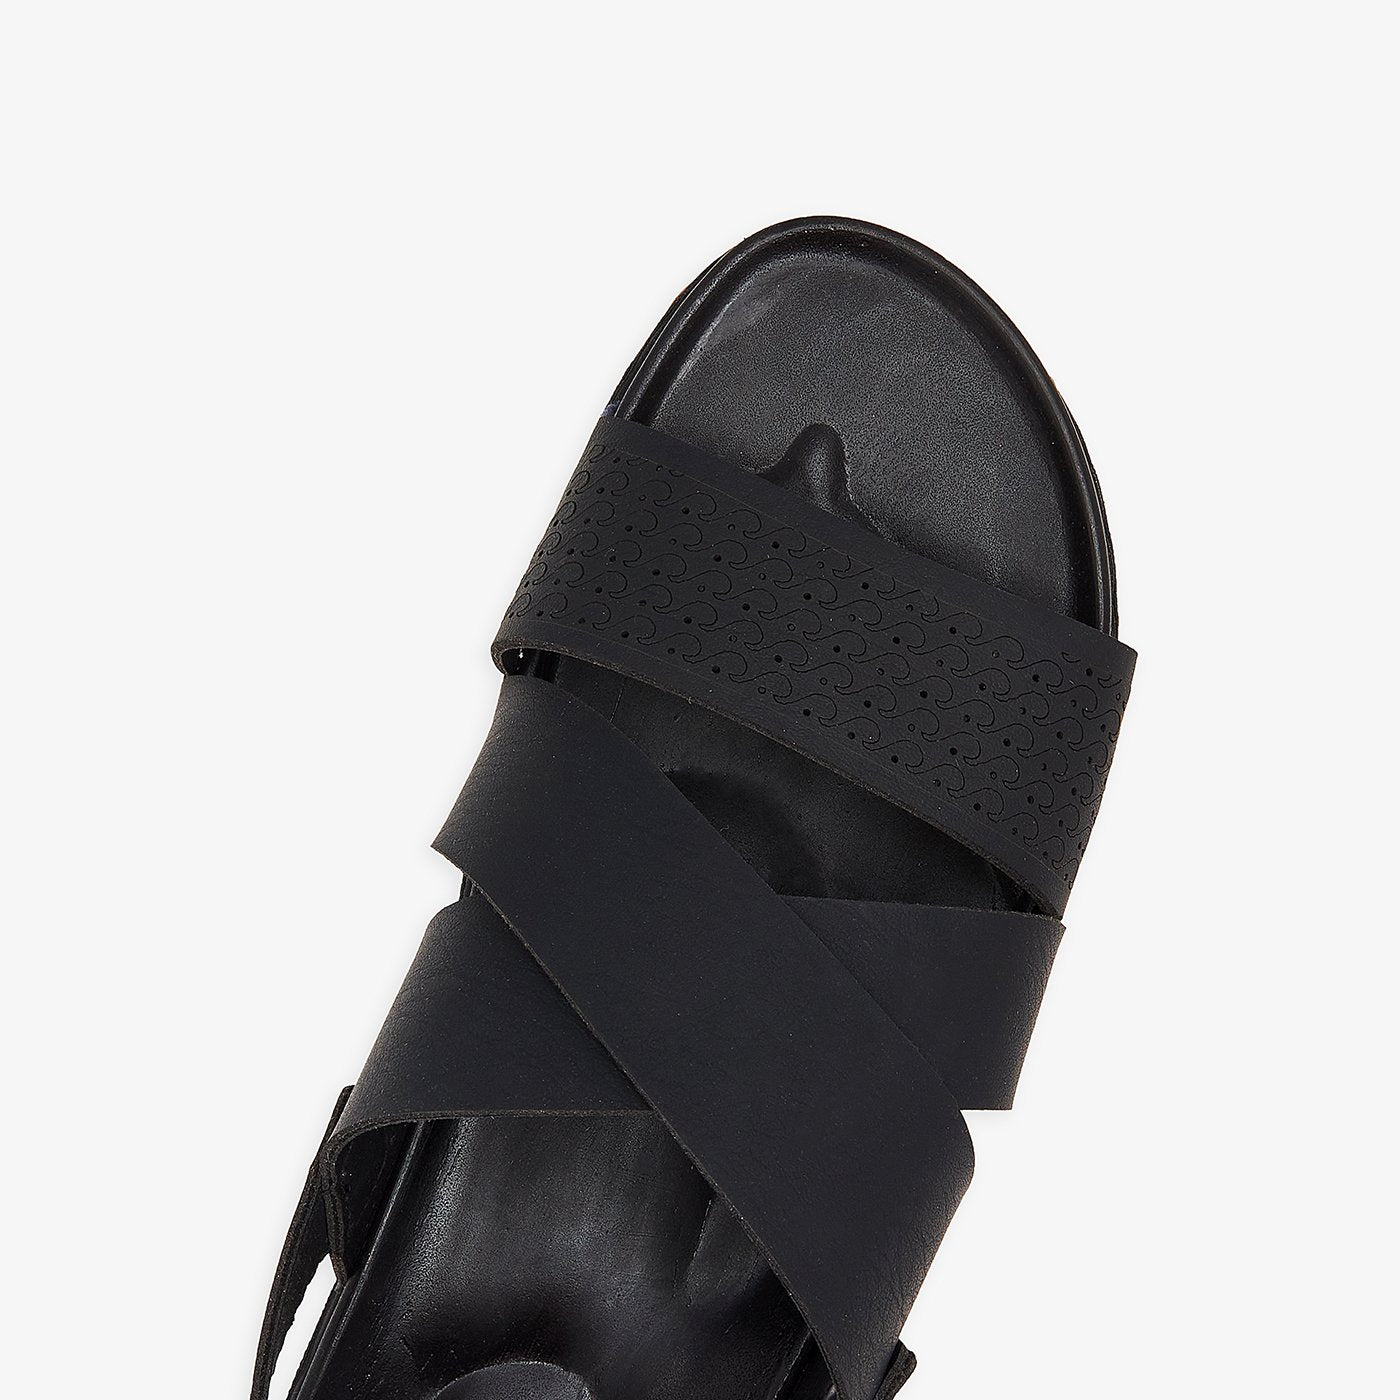 Strapped Sandals for Men